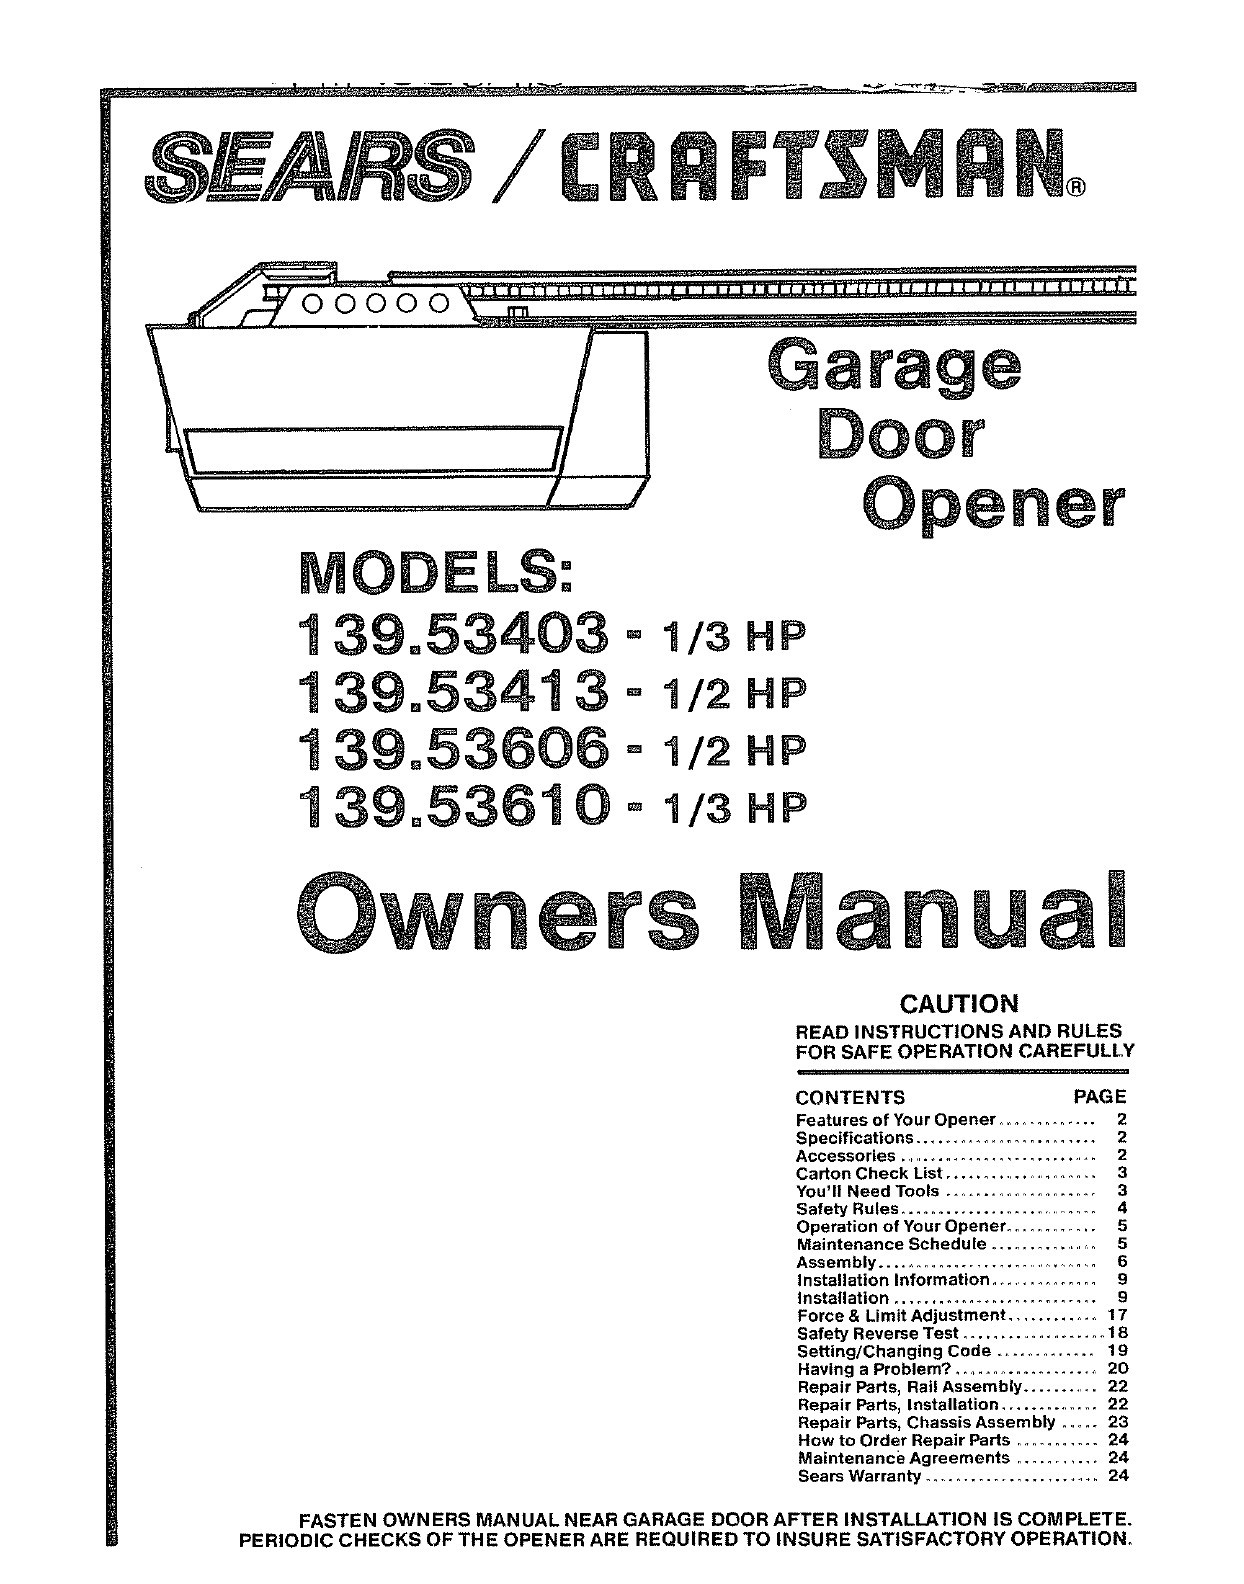 Wiring Diagram For Liftmaster Garage Door Opener New Of Random Dia - Liftmaster Wiring Diagram